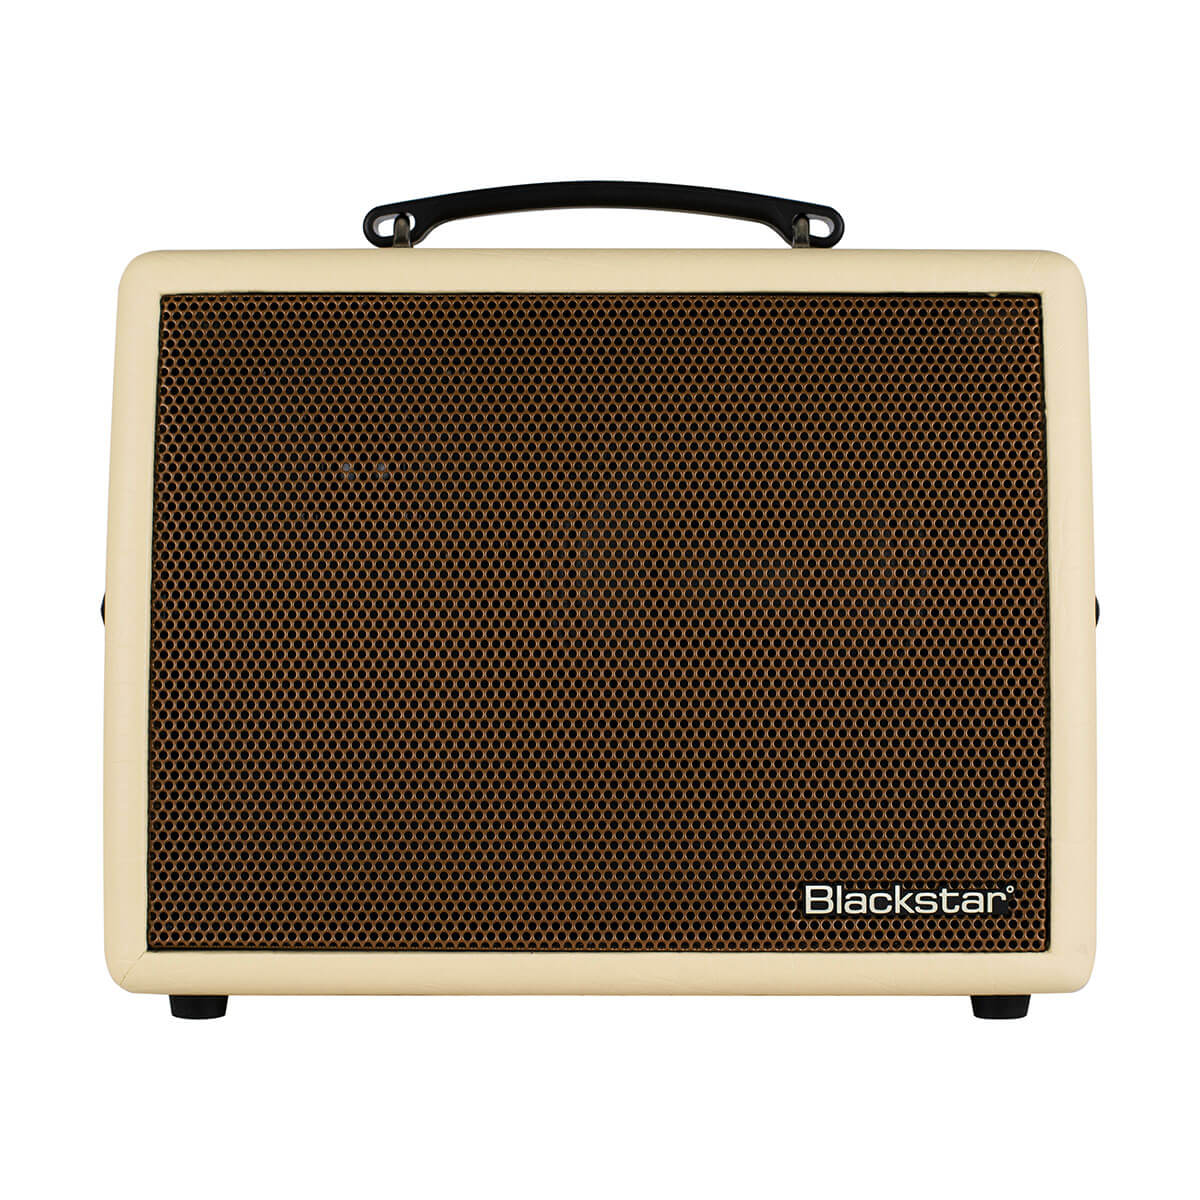 Blackstar Sonnet 60 Blonde - Acoustic Guitar Amplifier